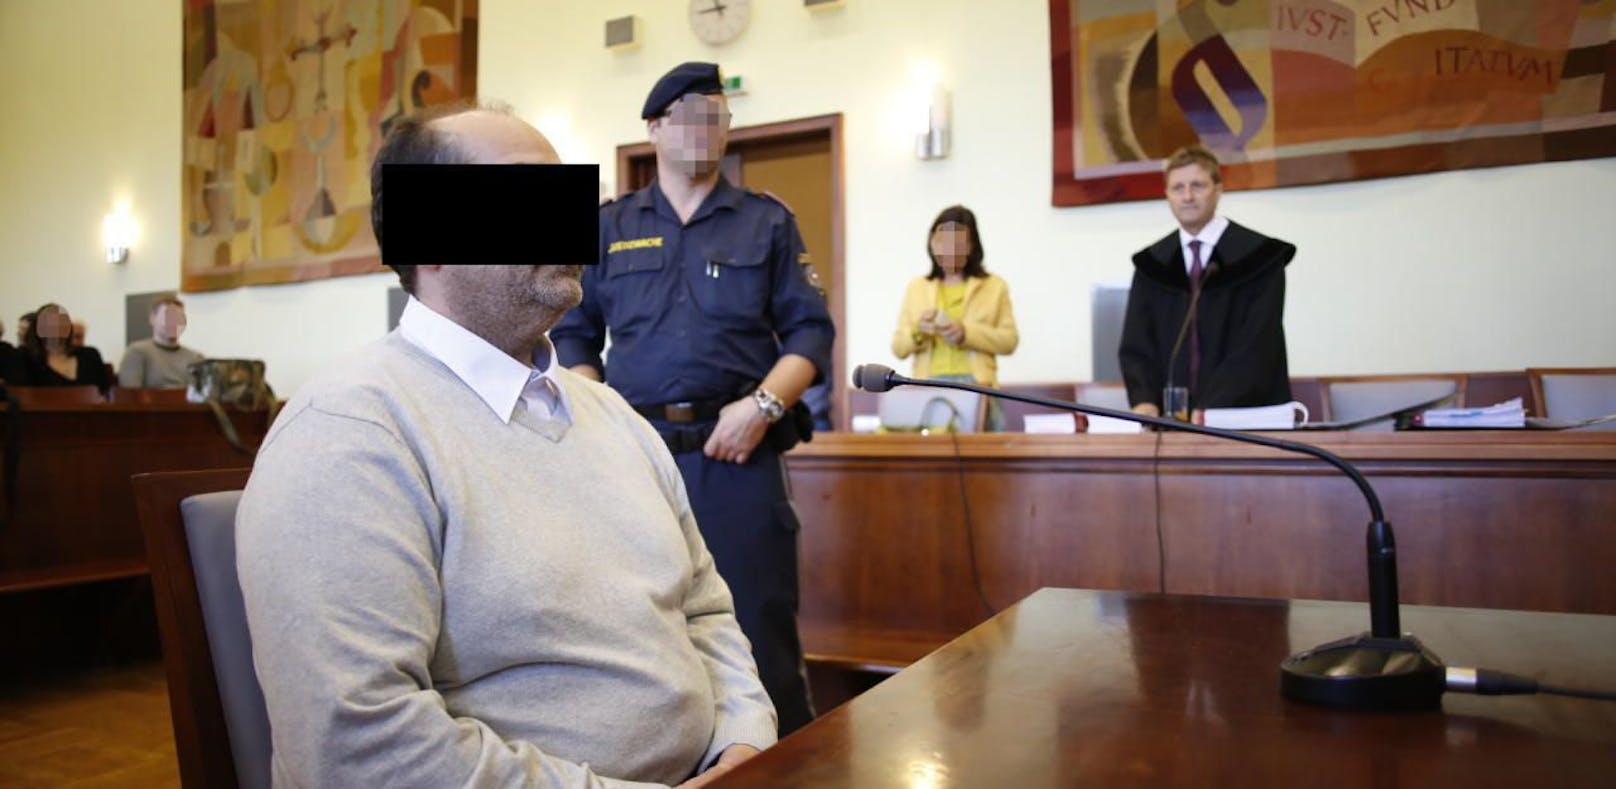 Der Angeklagte beim Prozess am Dienstag am Landesgericht Wiener Neustadt.